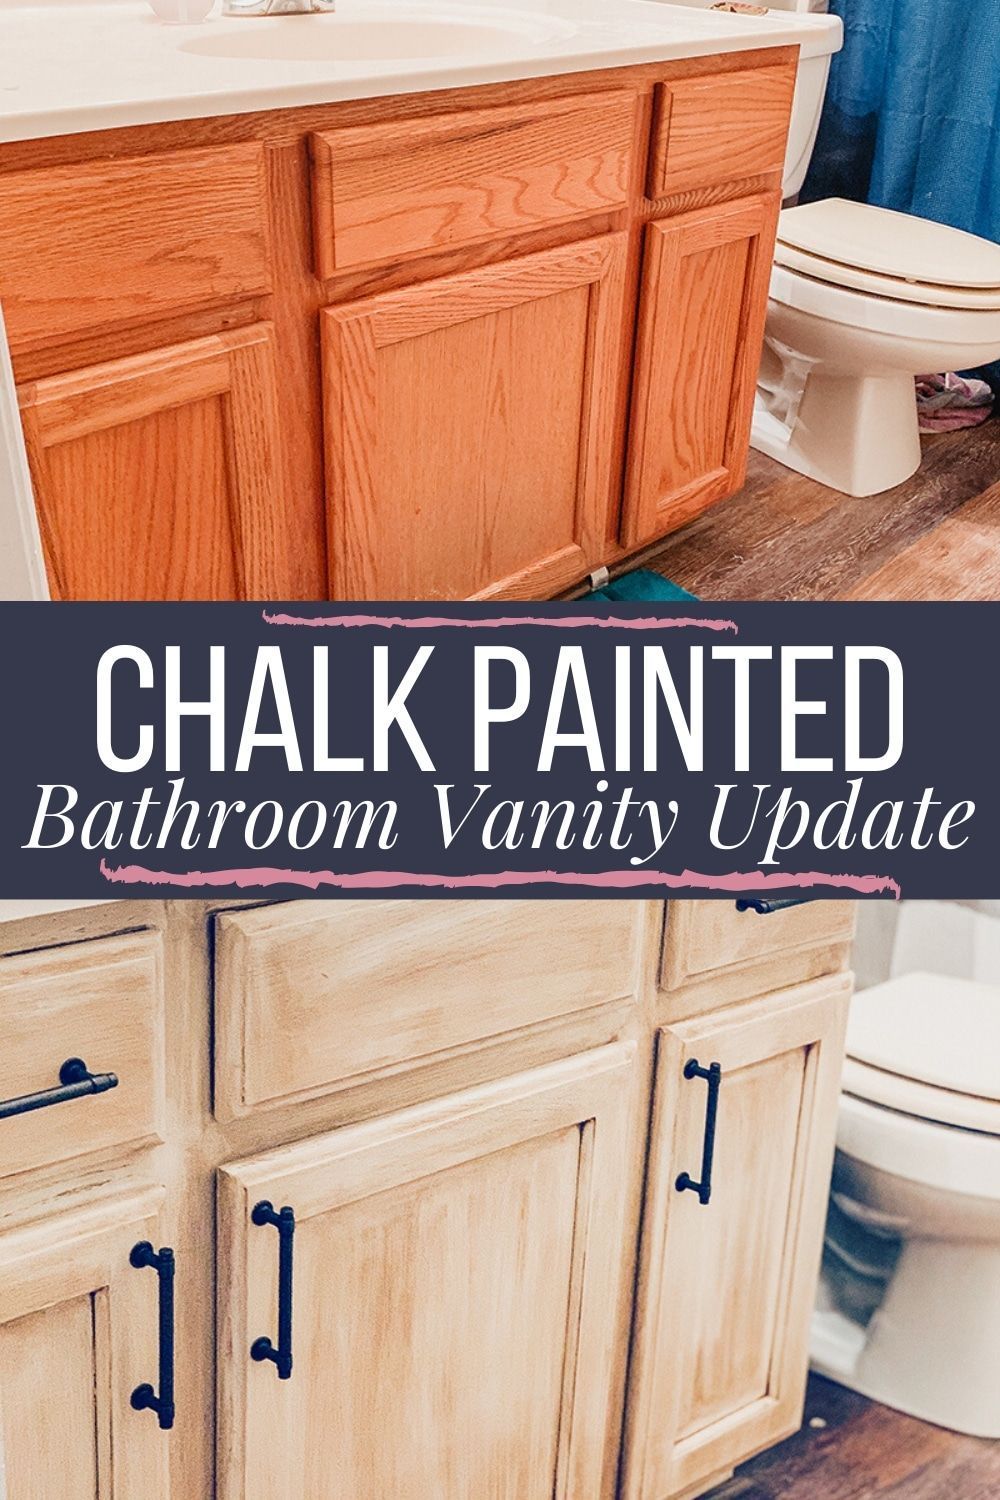 Oak Vanity Update With Rustoleum Chalk Paint & Glaze + Review - Oak Vanity Update With Rustoleum Chalk Paint & Glaze + Review -   19 diy House improvements ideas